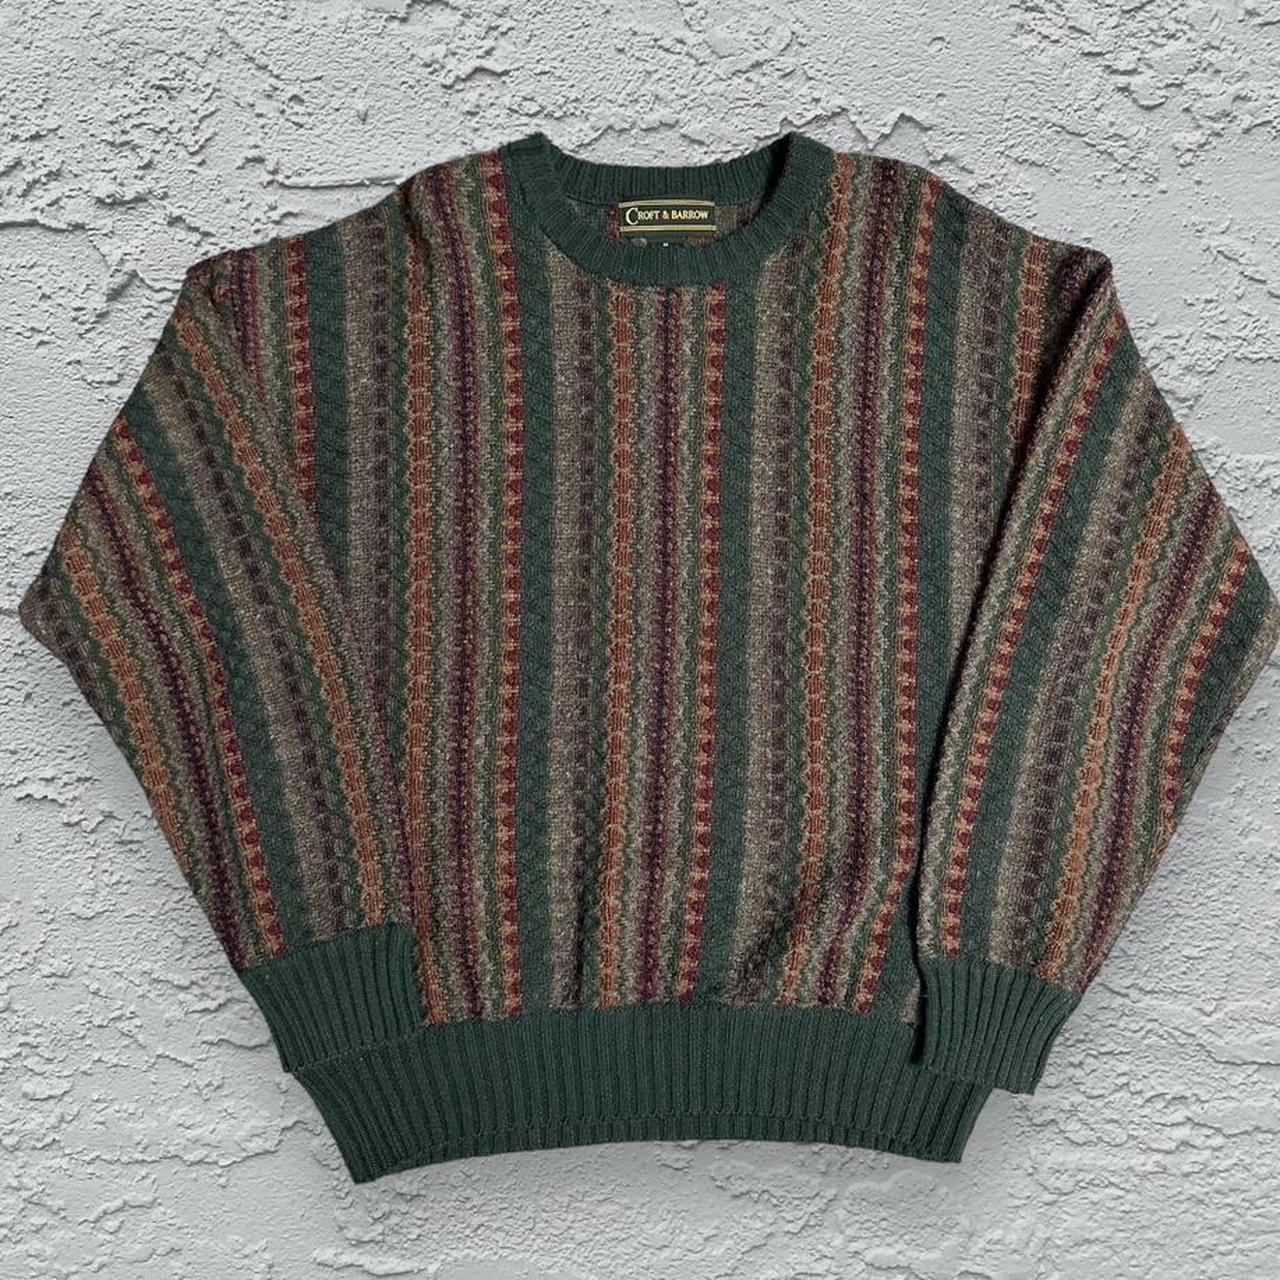 Vintage 90s Grandpa Knit Pattern Sweater 27 in.... - Depop